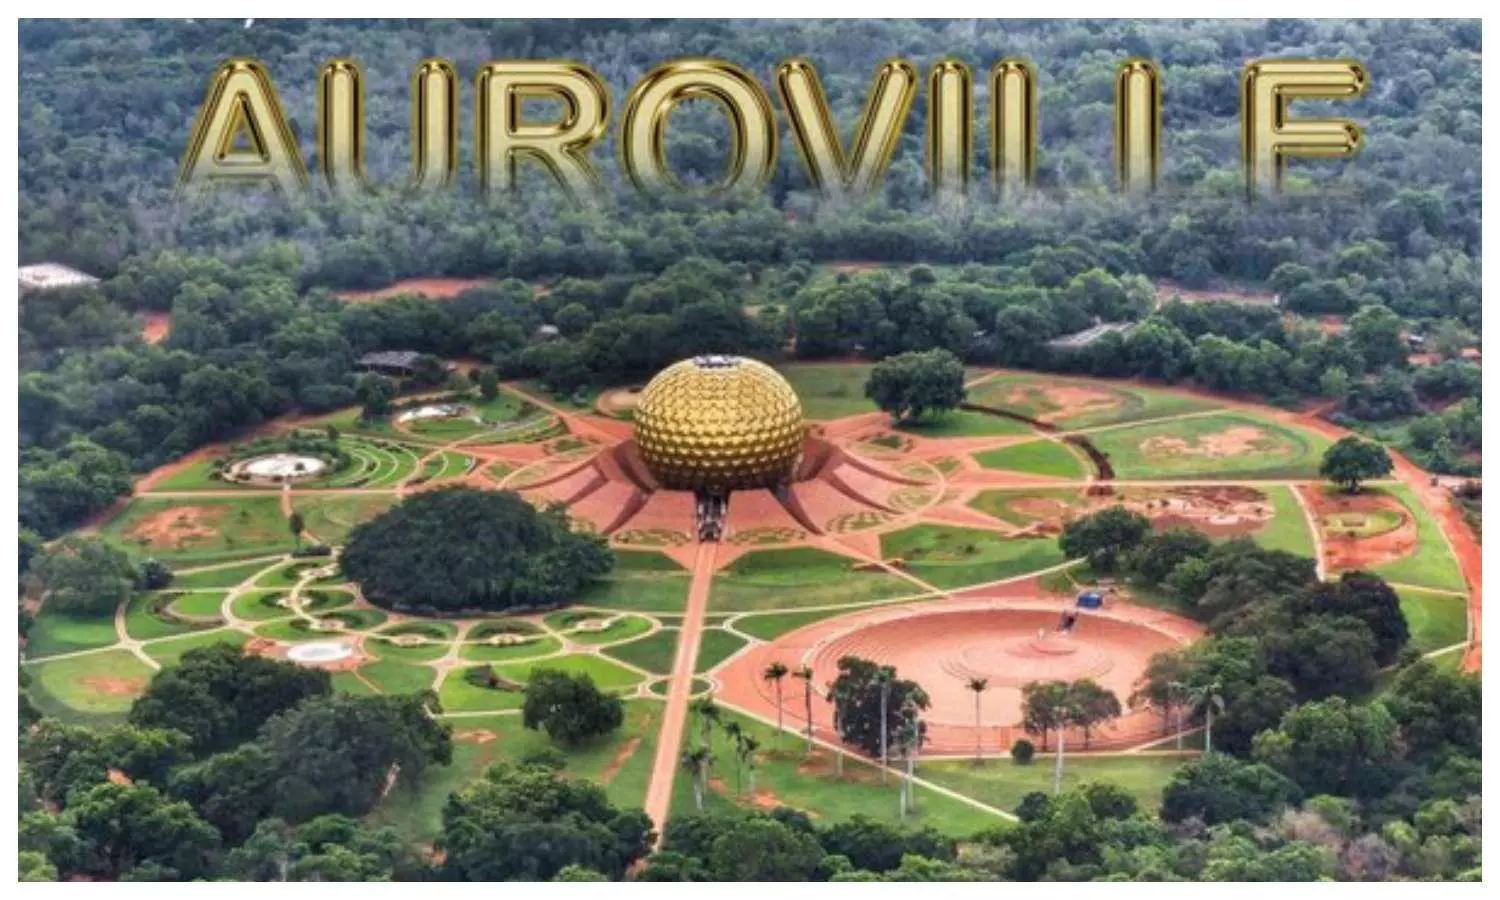 Auroville in Tamil Nadu